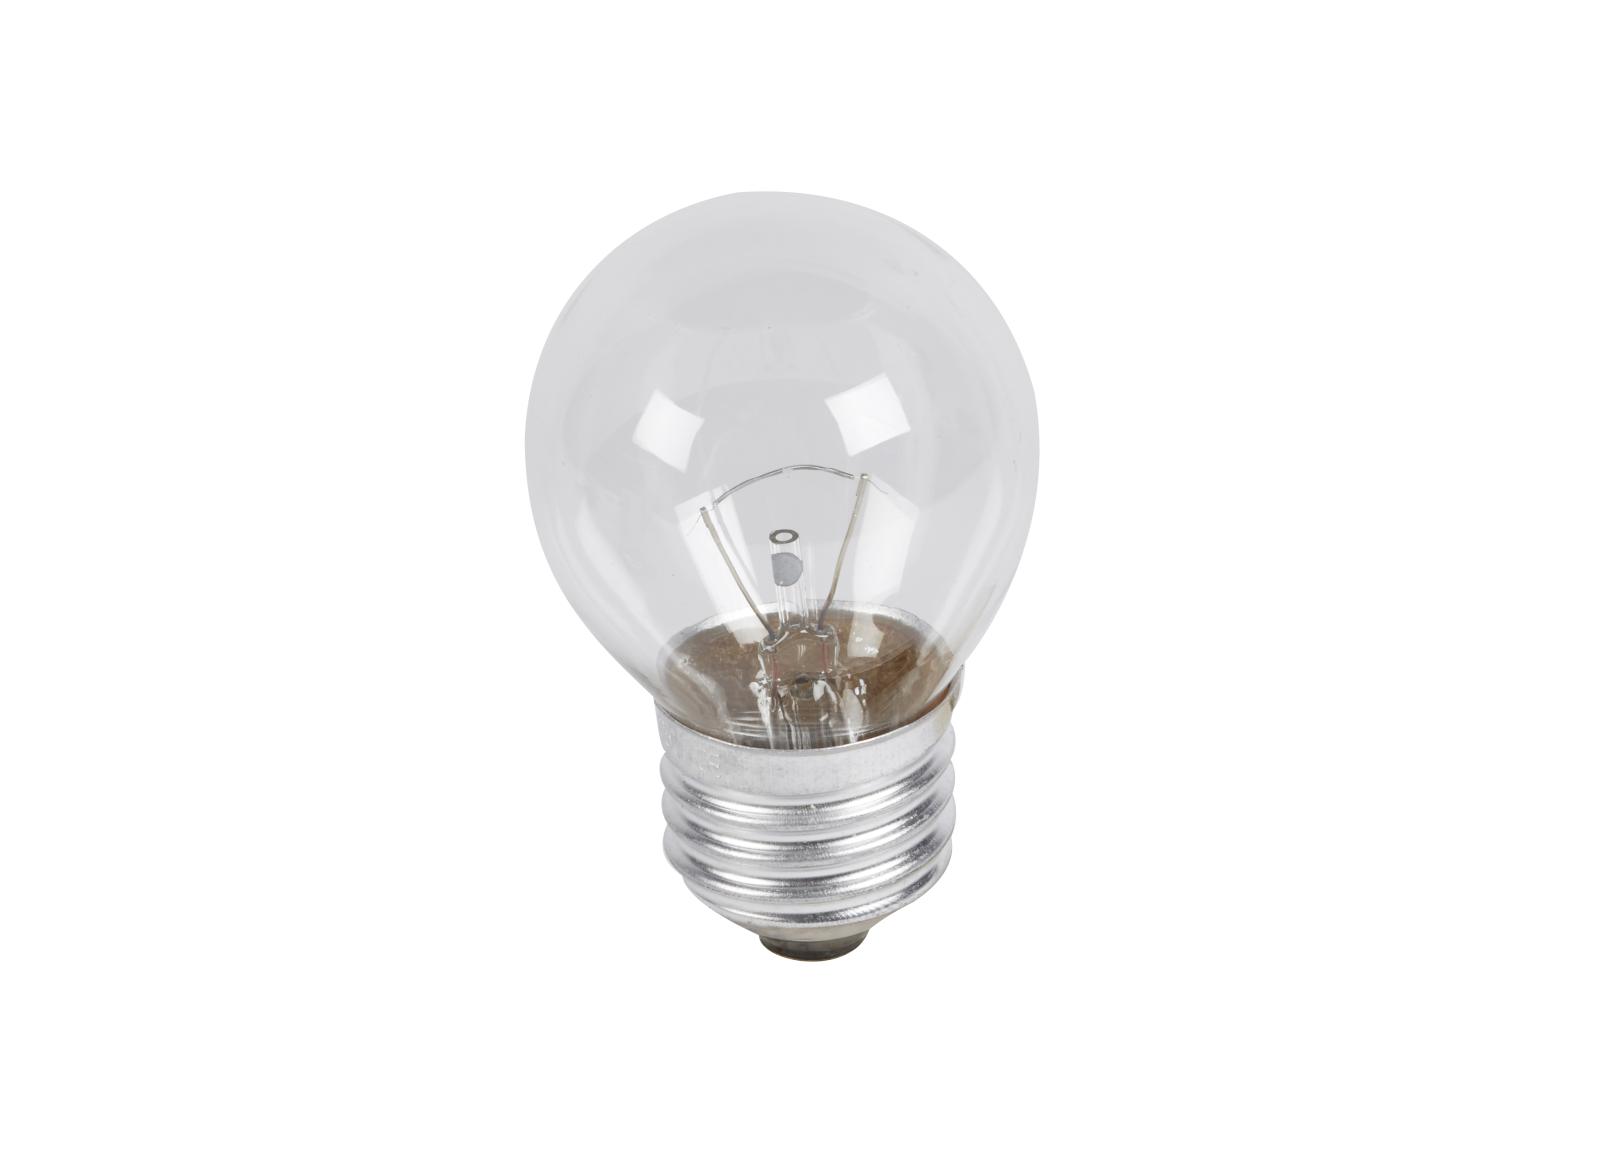 Lampe E27 24V 25W pour Luminaire pour Sources Centrales LSC d'évacuation type métal-verre réference 210000